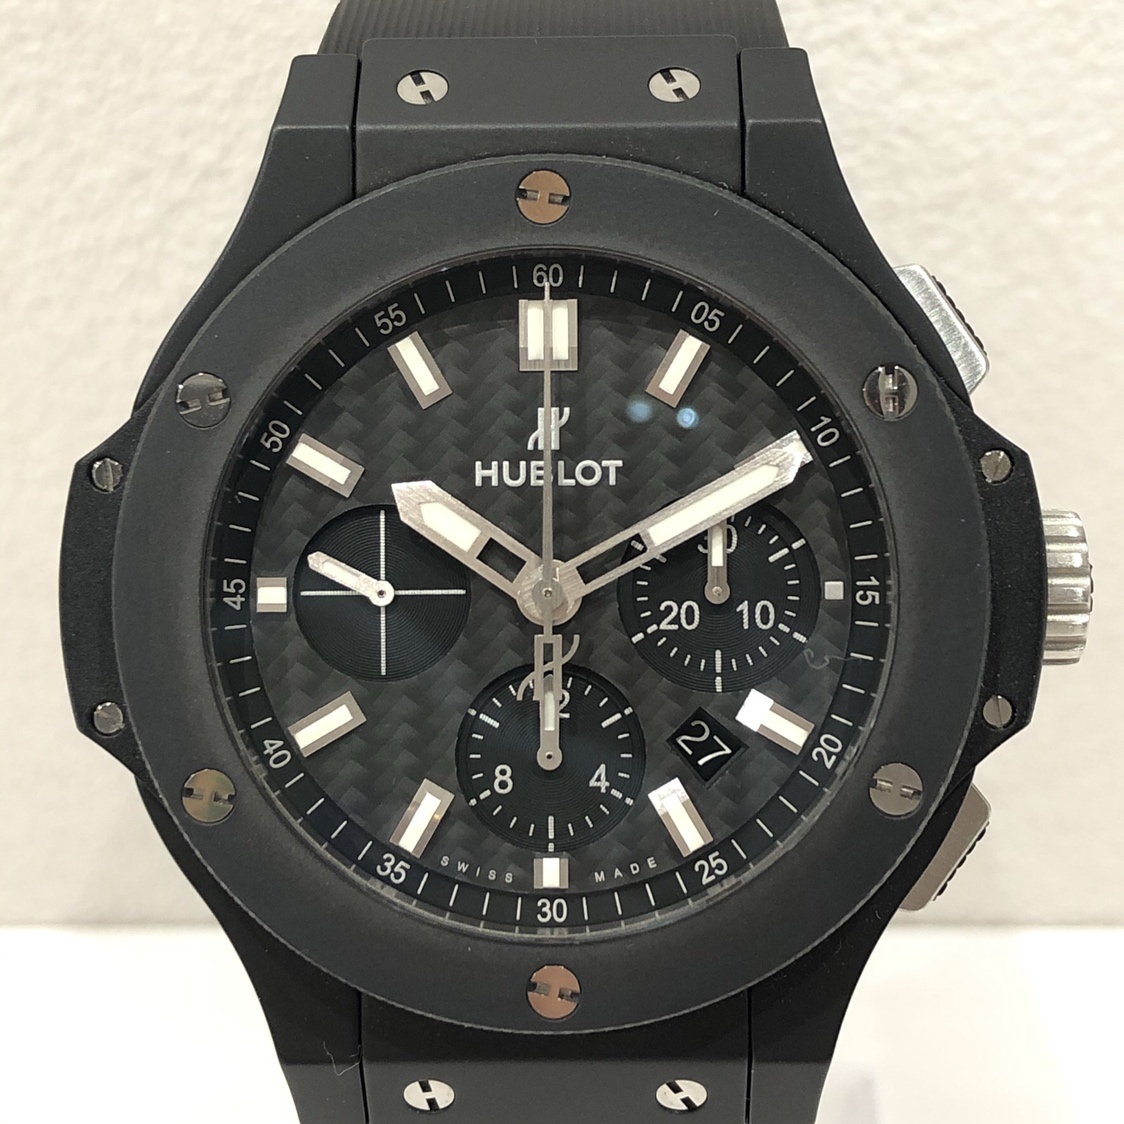 ウブロの301.CI.1770.RX ビックバンエボリューションブラックマジック 腕時計の買取実績です。